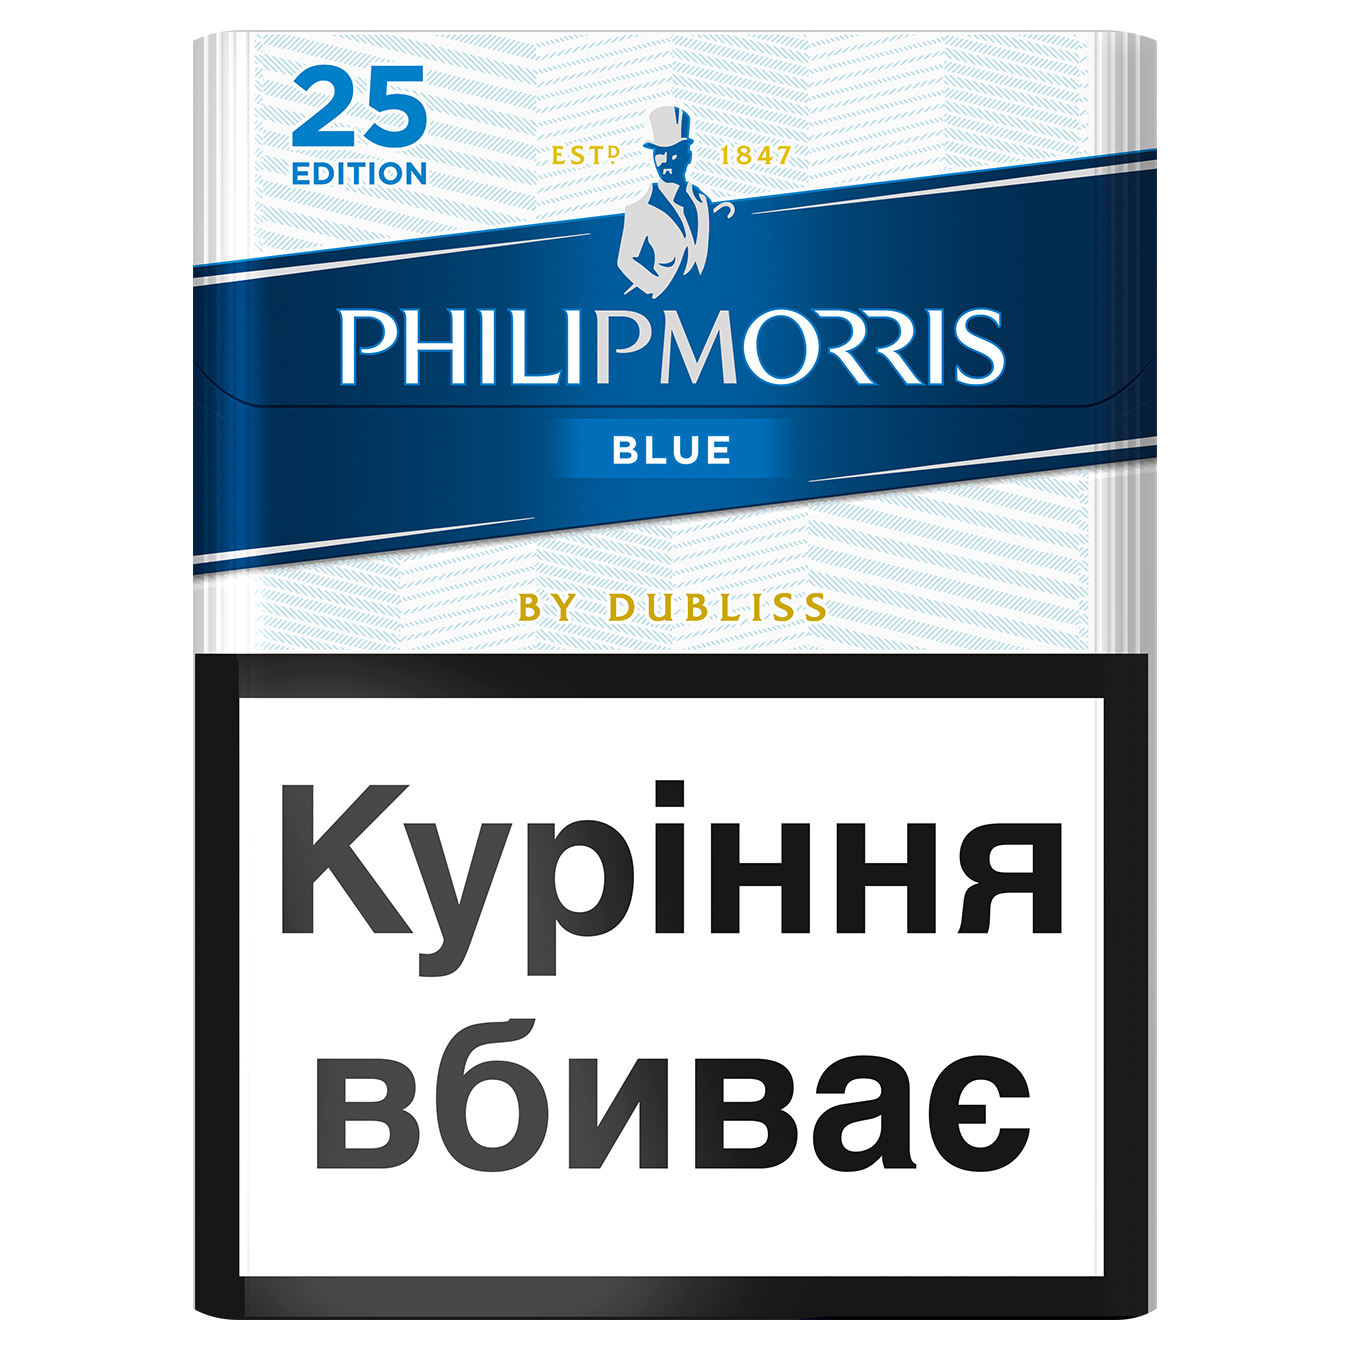 Сигареты Philip Morris Blue 25 Edition 25шт (цена указана без акциза)